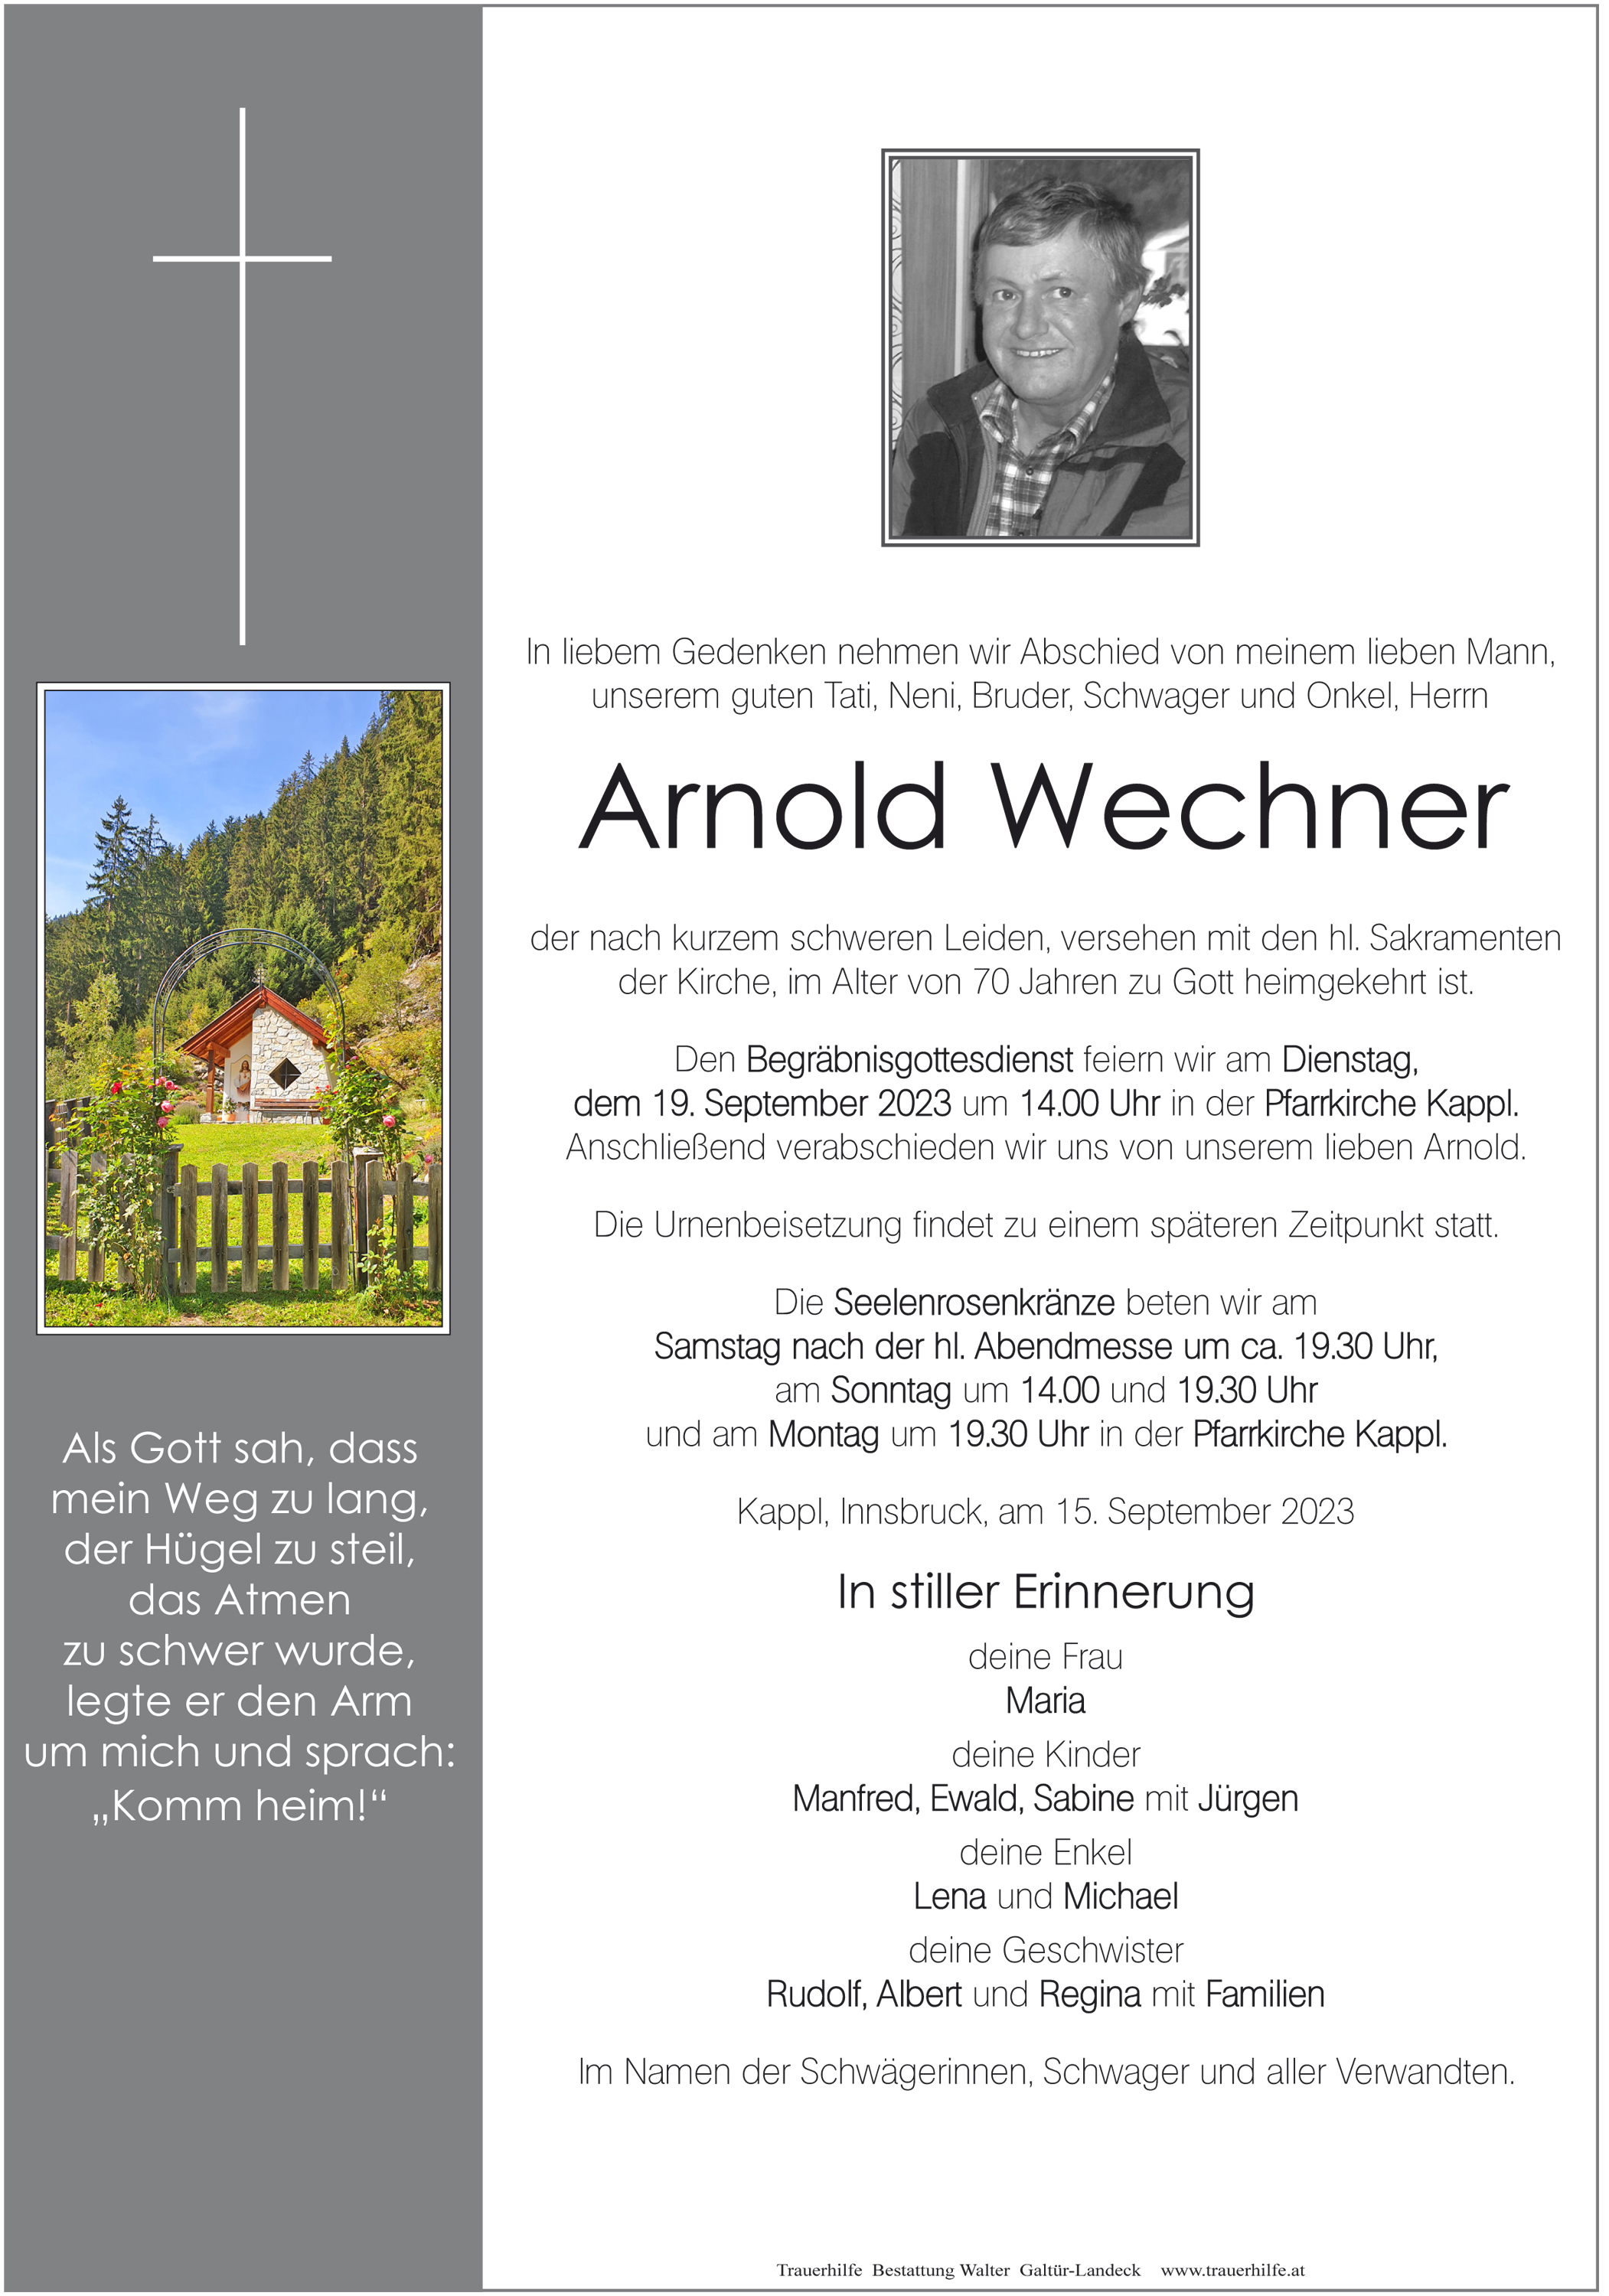 Arnold Wechner